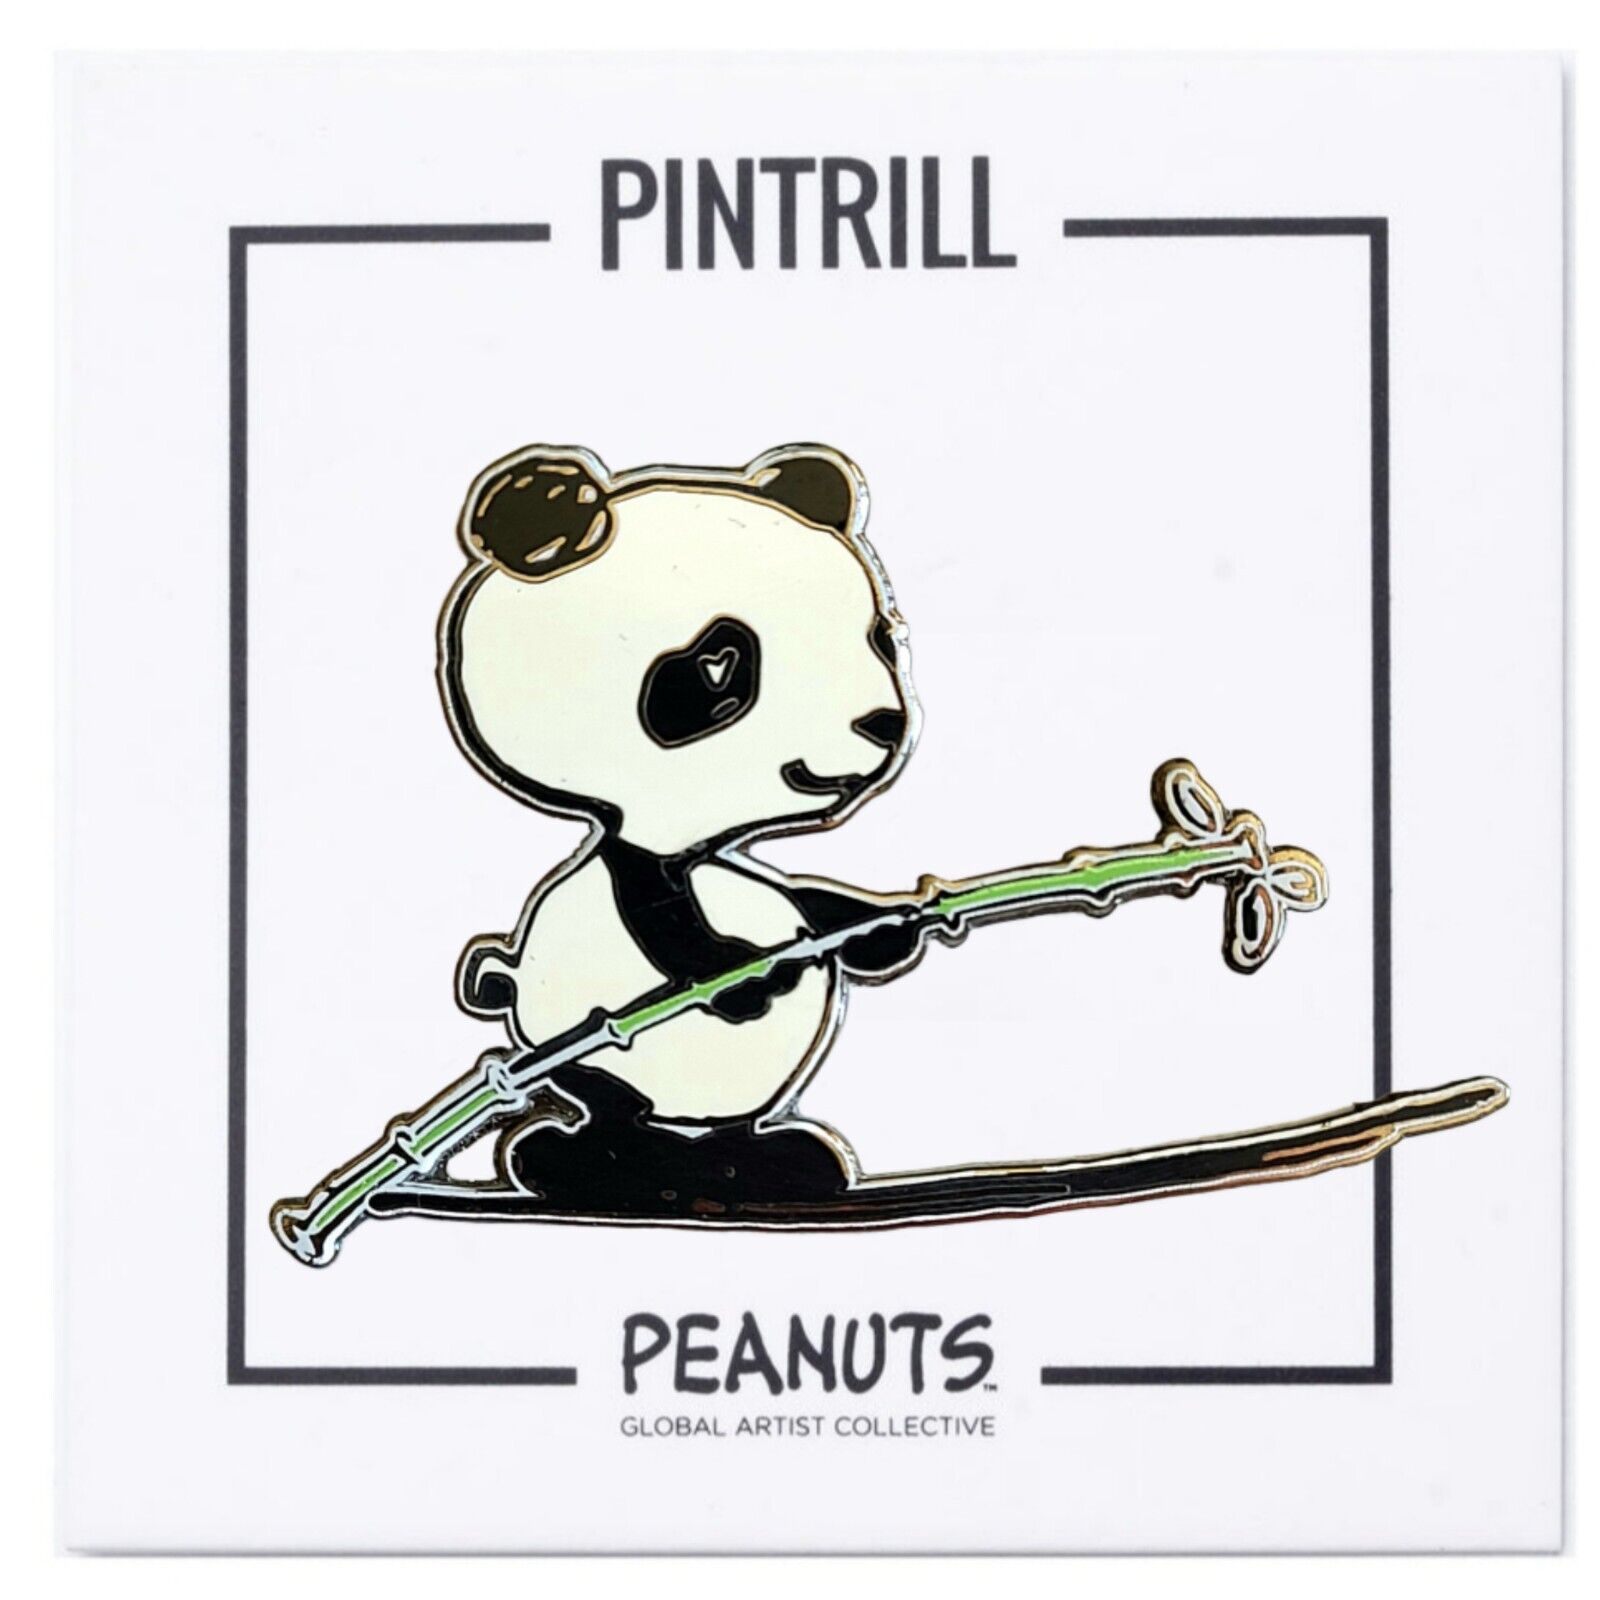 ⚡RARE⚡ PINTRILL x PEANUTS x ROB PRUITT Panda Pin *BRAND NEW*  🐼